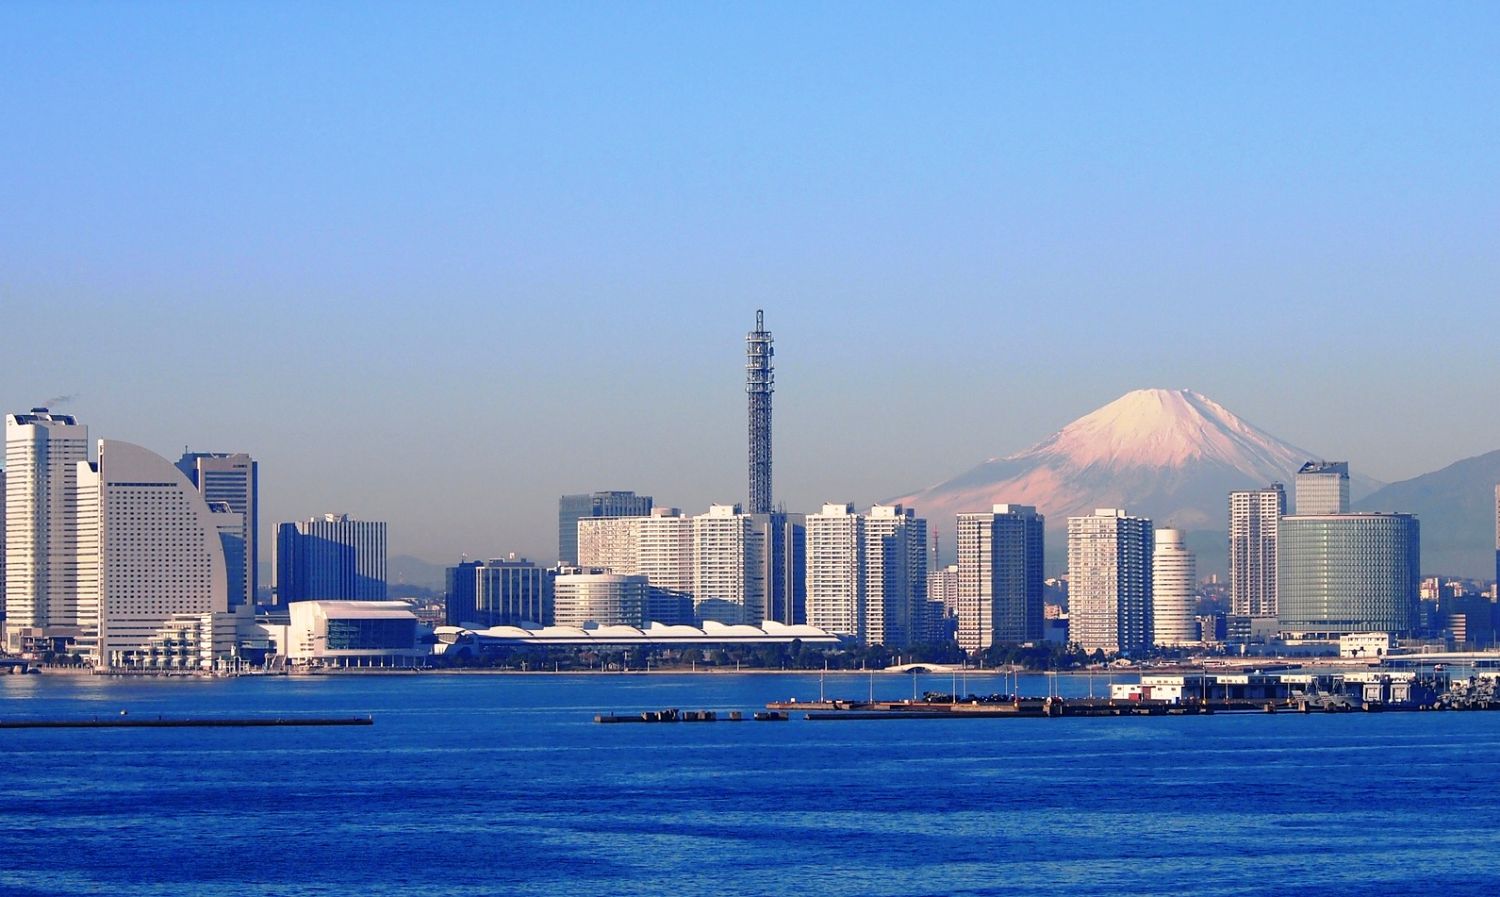 Mount Fuji backs Yokohama Bay